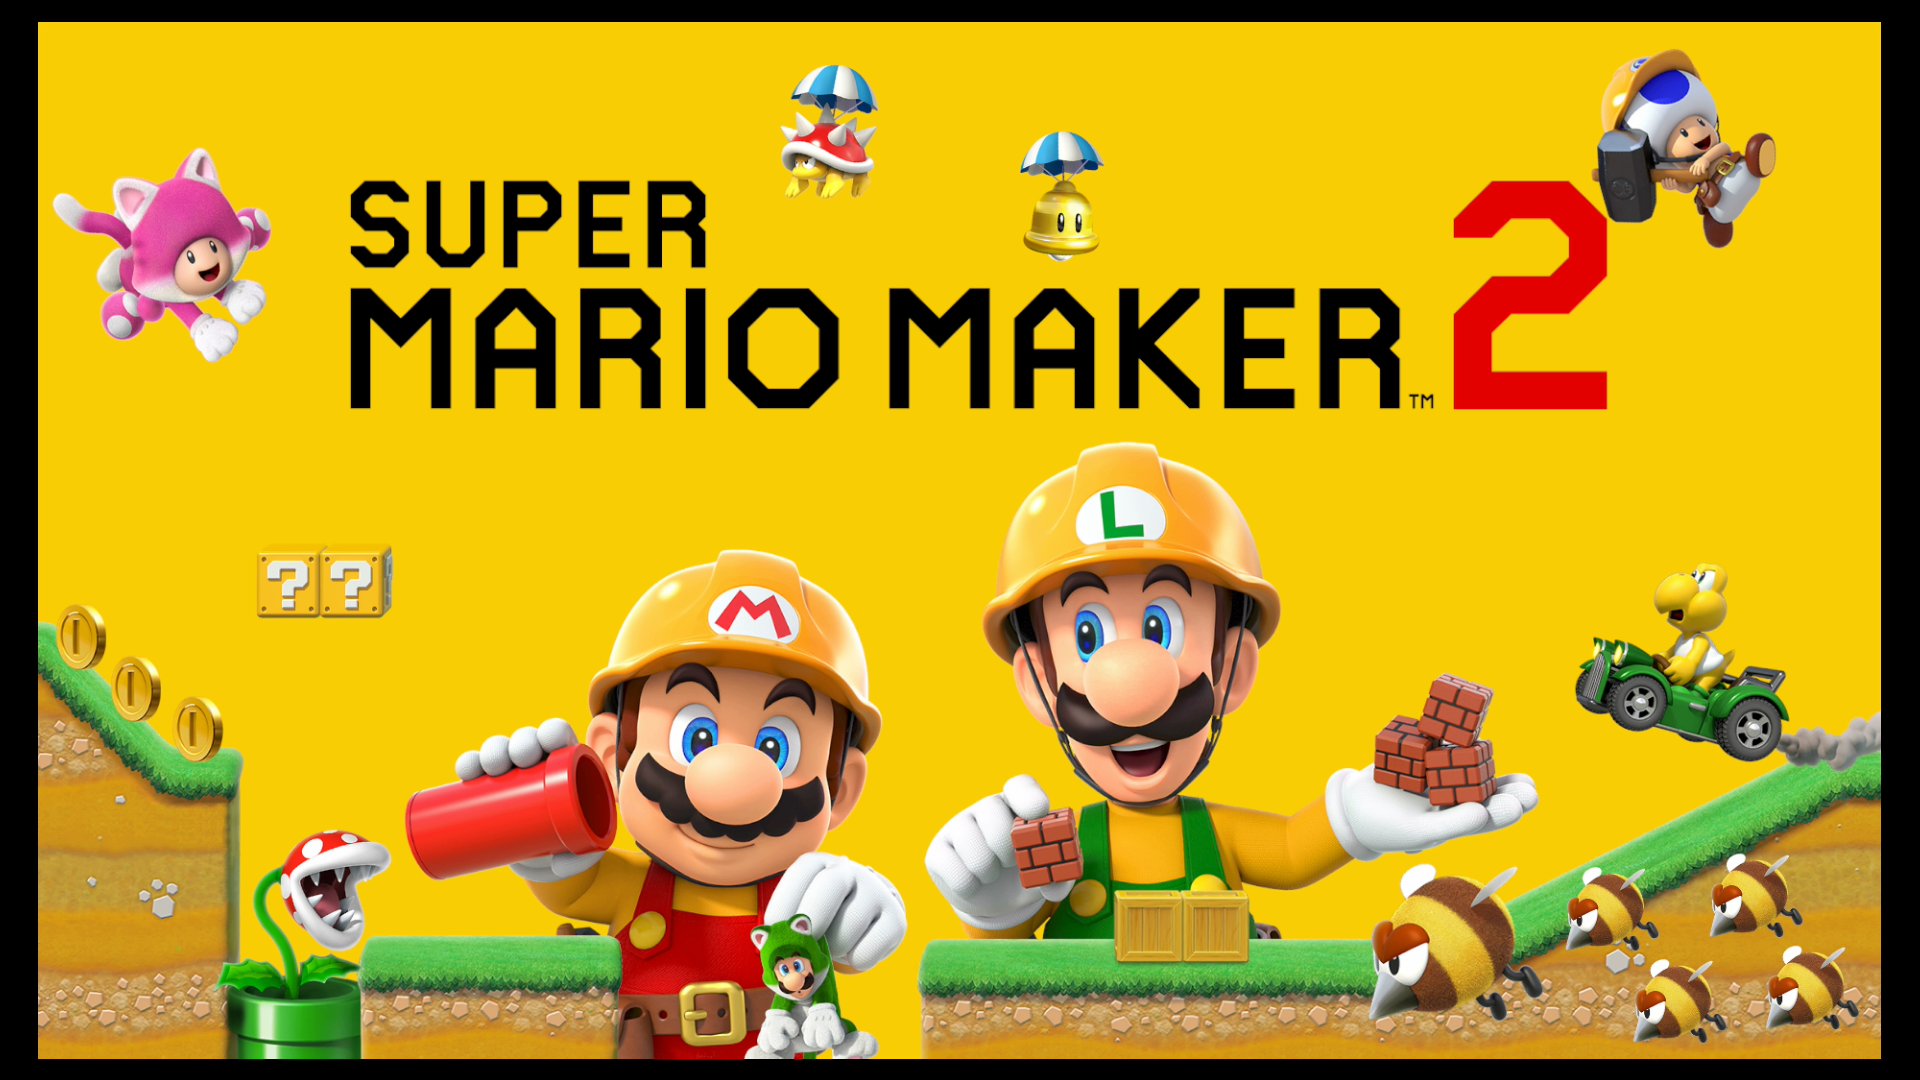 Mario Teaches Platforming Post 1 (Super Mario Maker 2)